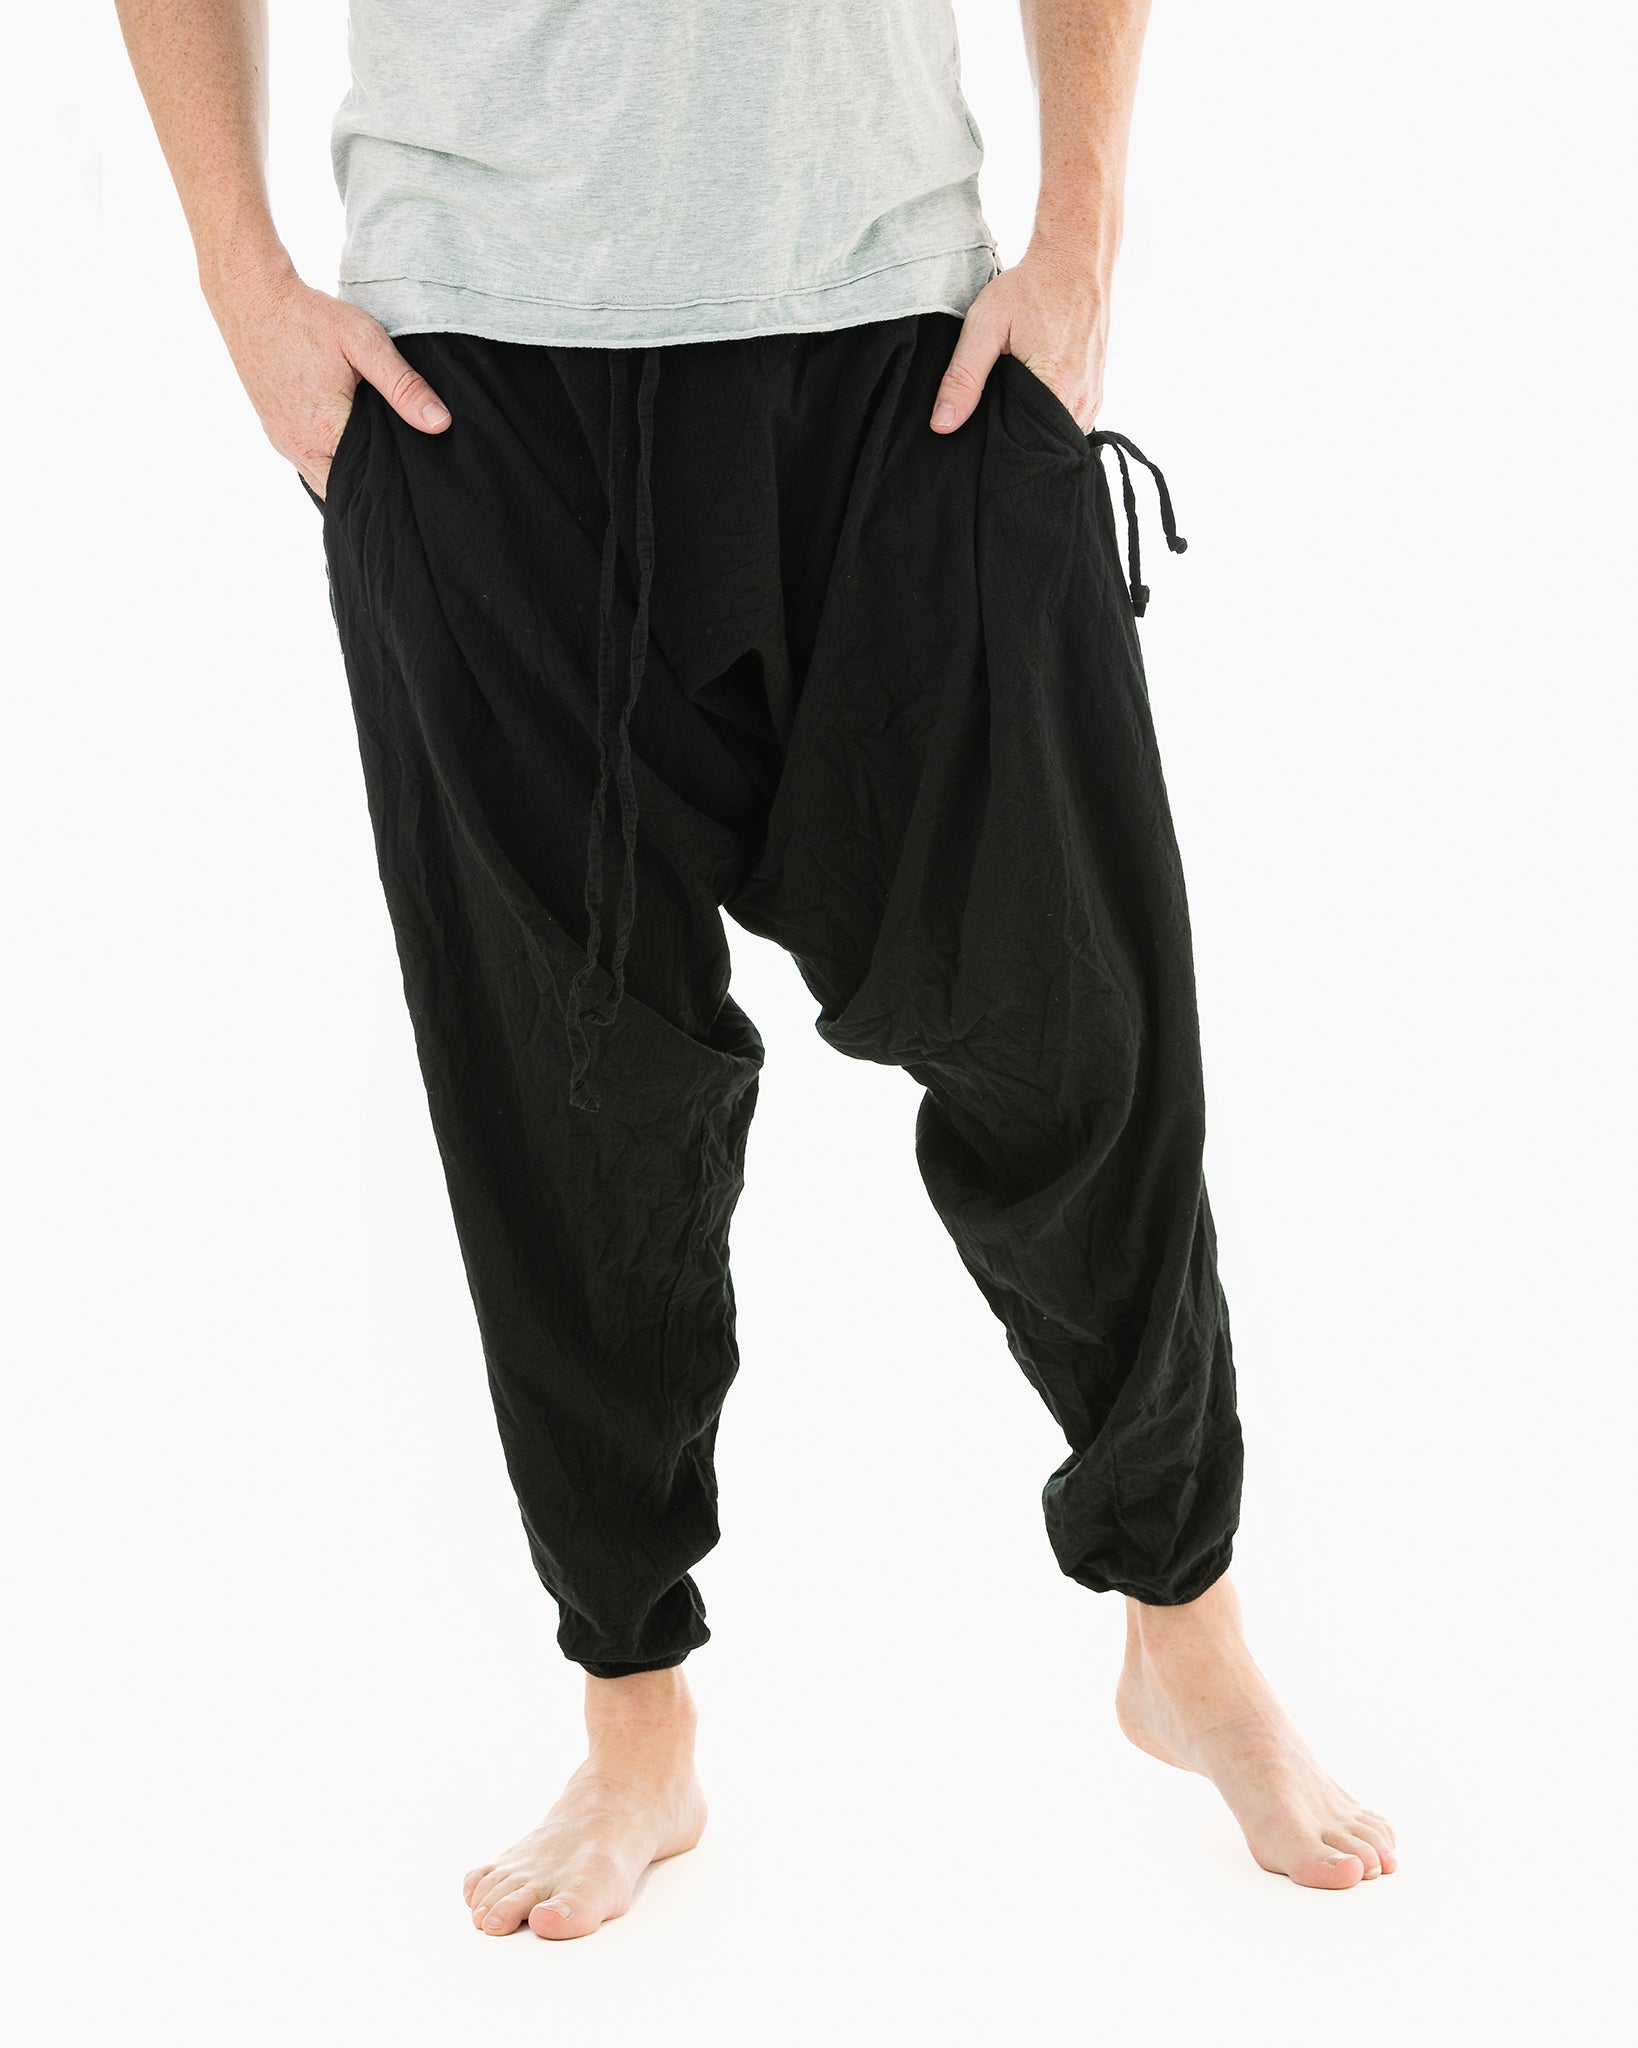 Mens Harem Pants, Ninja Pants for Mens, Yoga Pants, Meditation Pants Mens,  Mens Yoga Pants, Boho Pants, Printed Black Pants, Beach Wear 